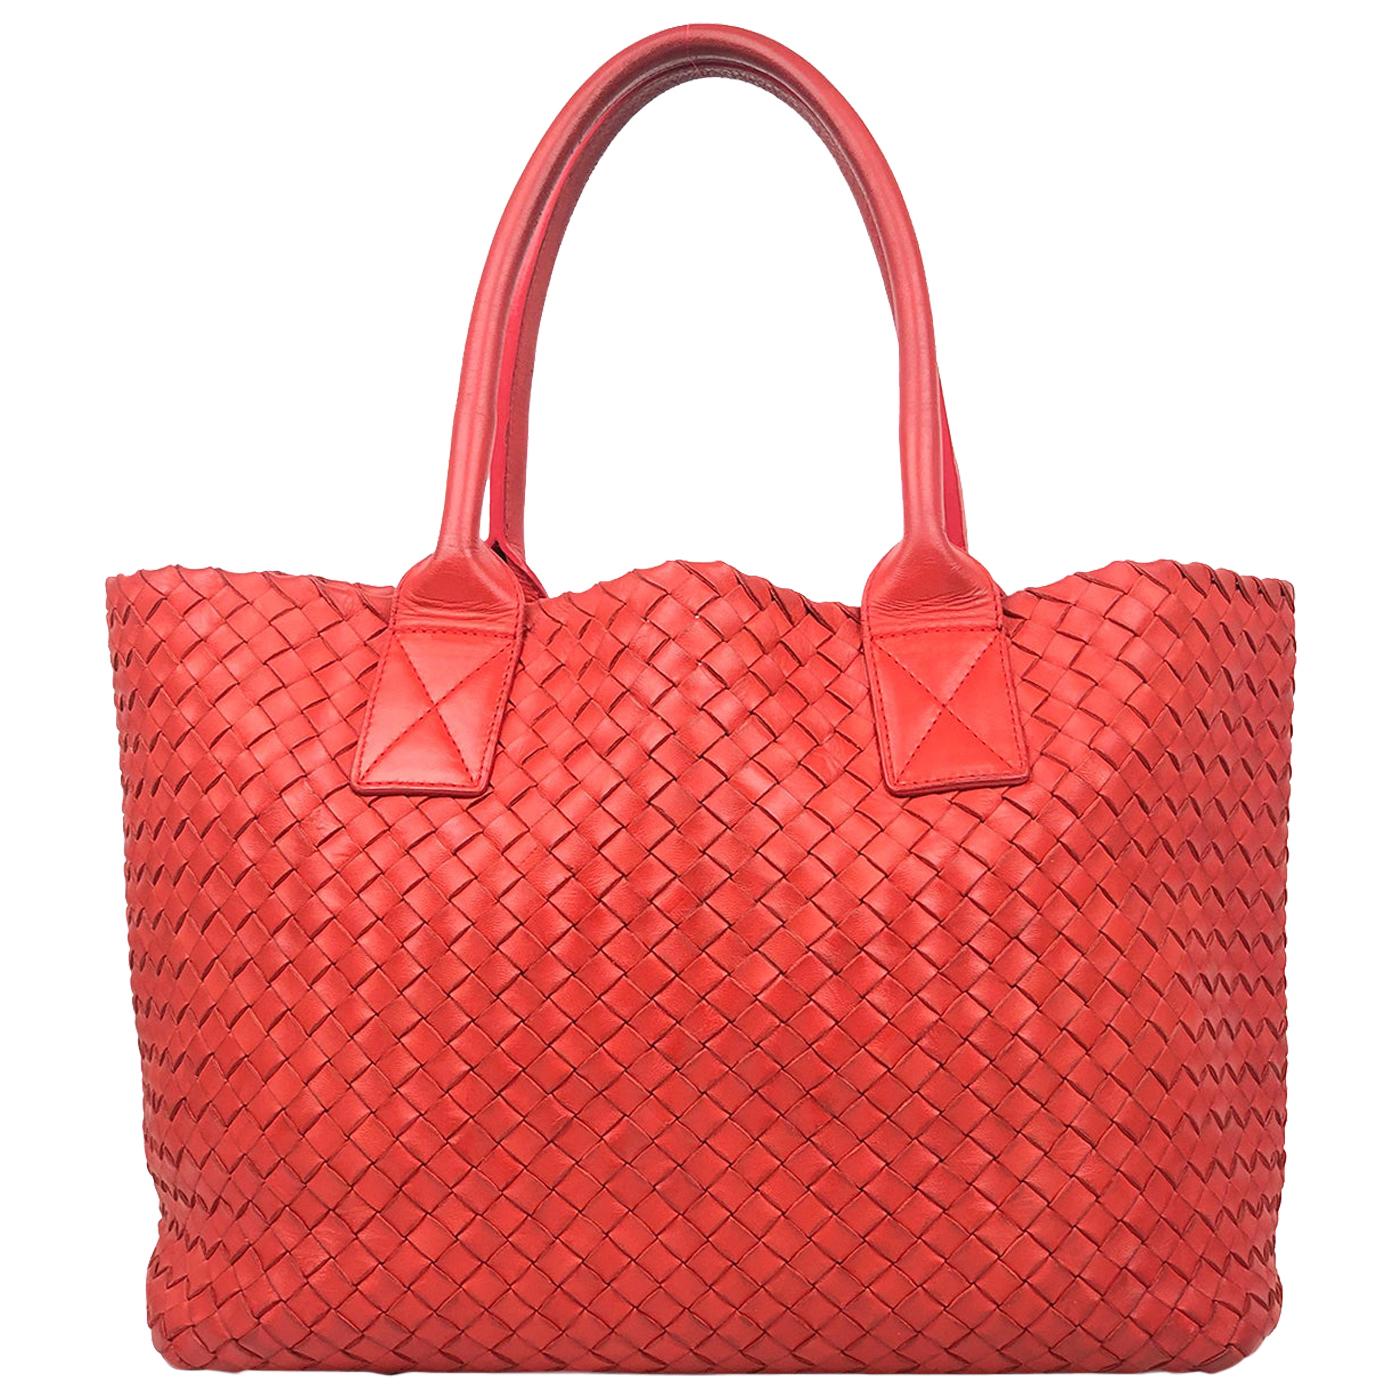 Red Intrecciato Leather Bottega Veneta Small Cabat Tote Bag For Sale